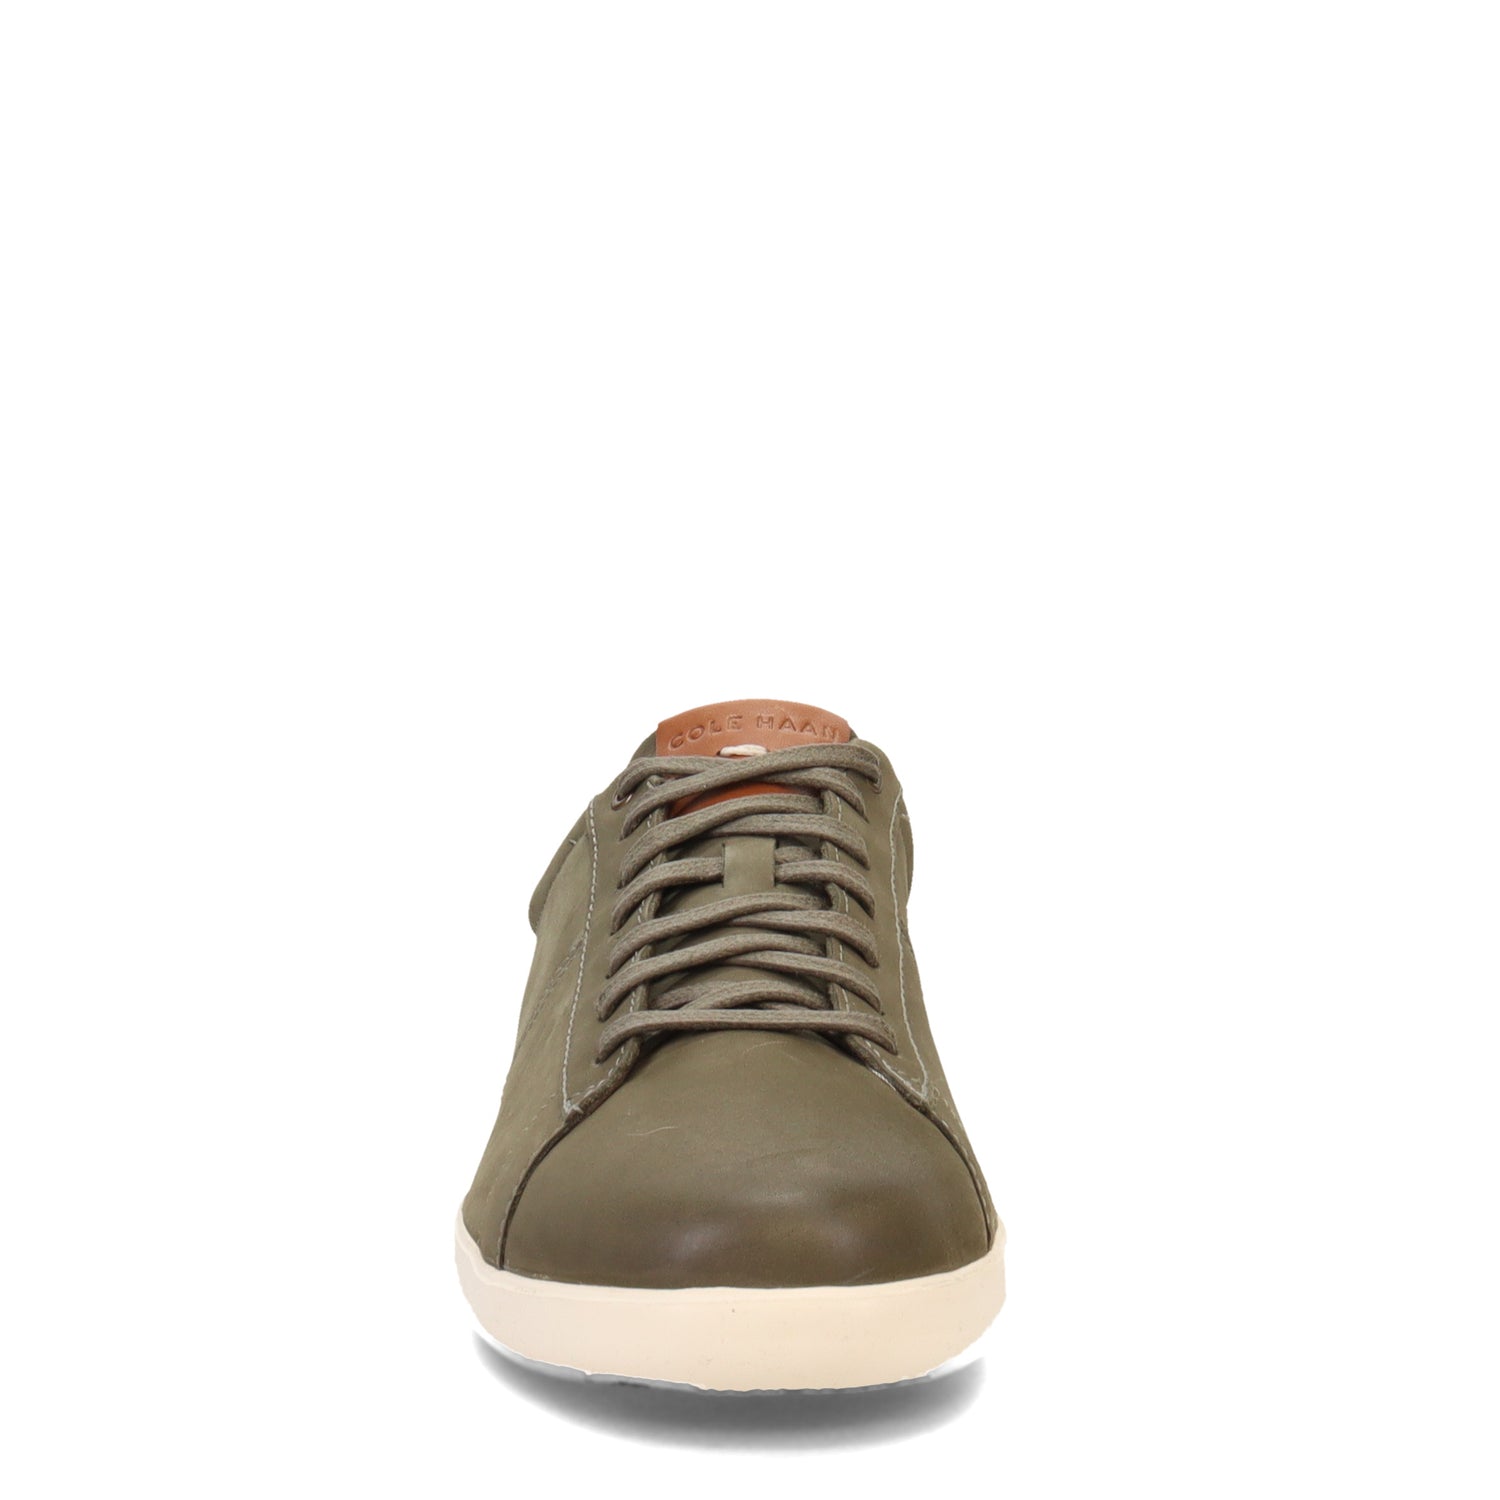 Peltz Shoes  Men's Cole Haan Reagan Sneaker Tea C36879